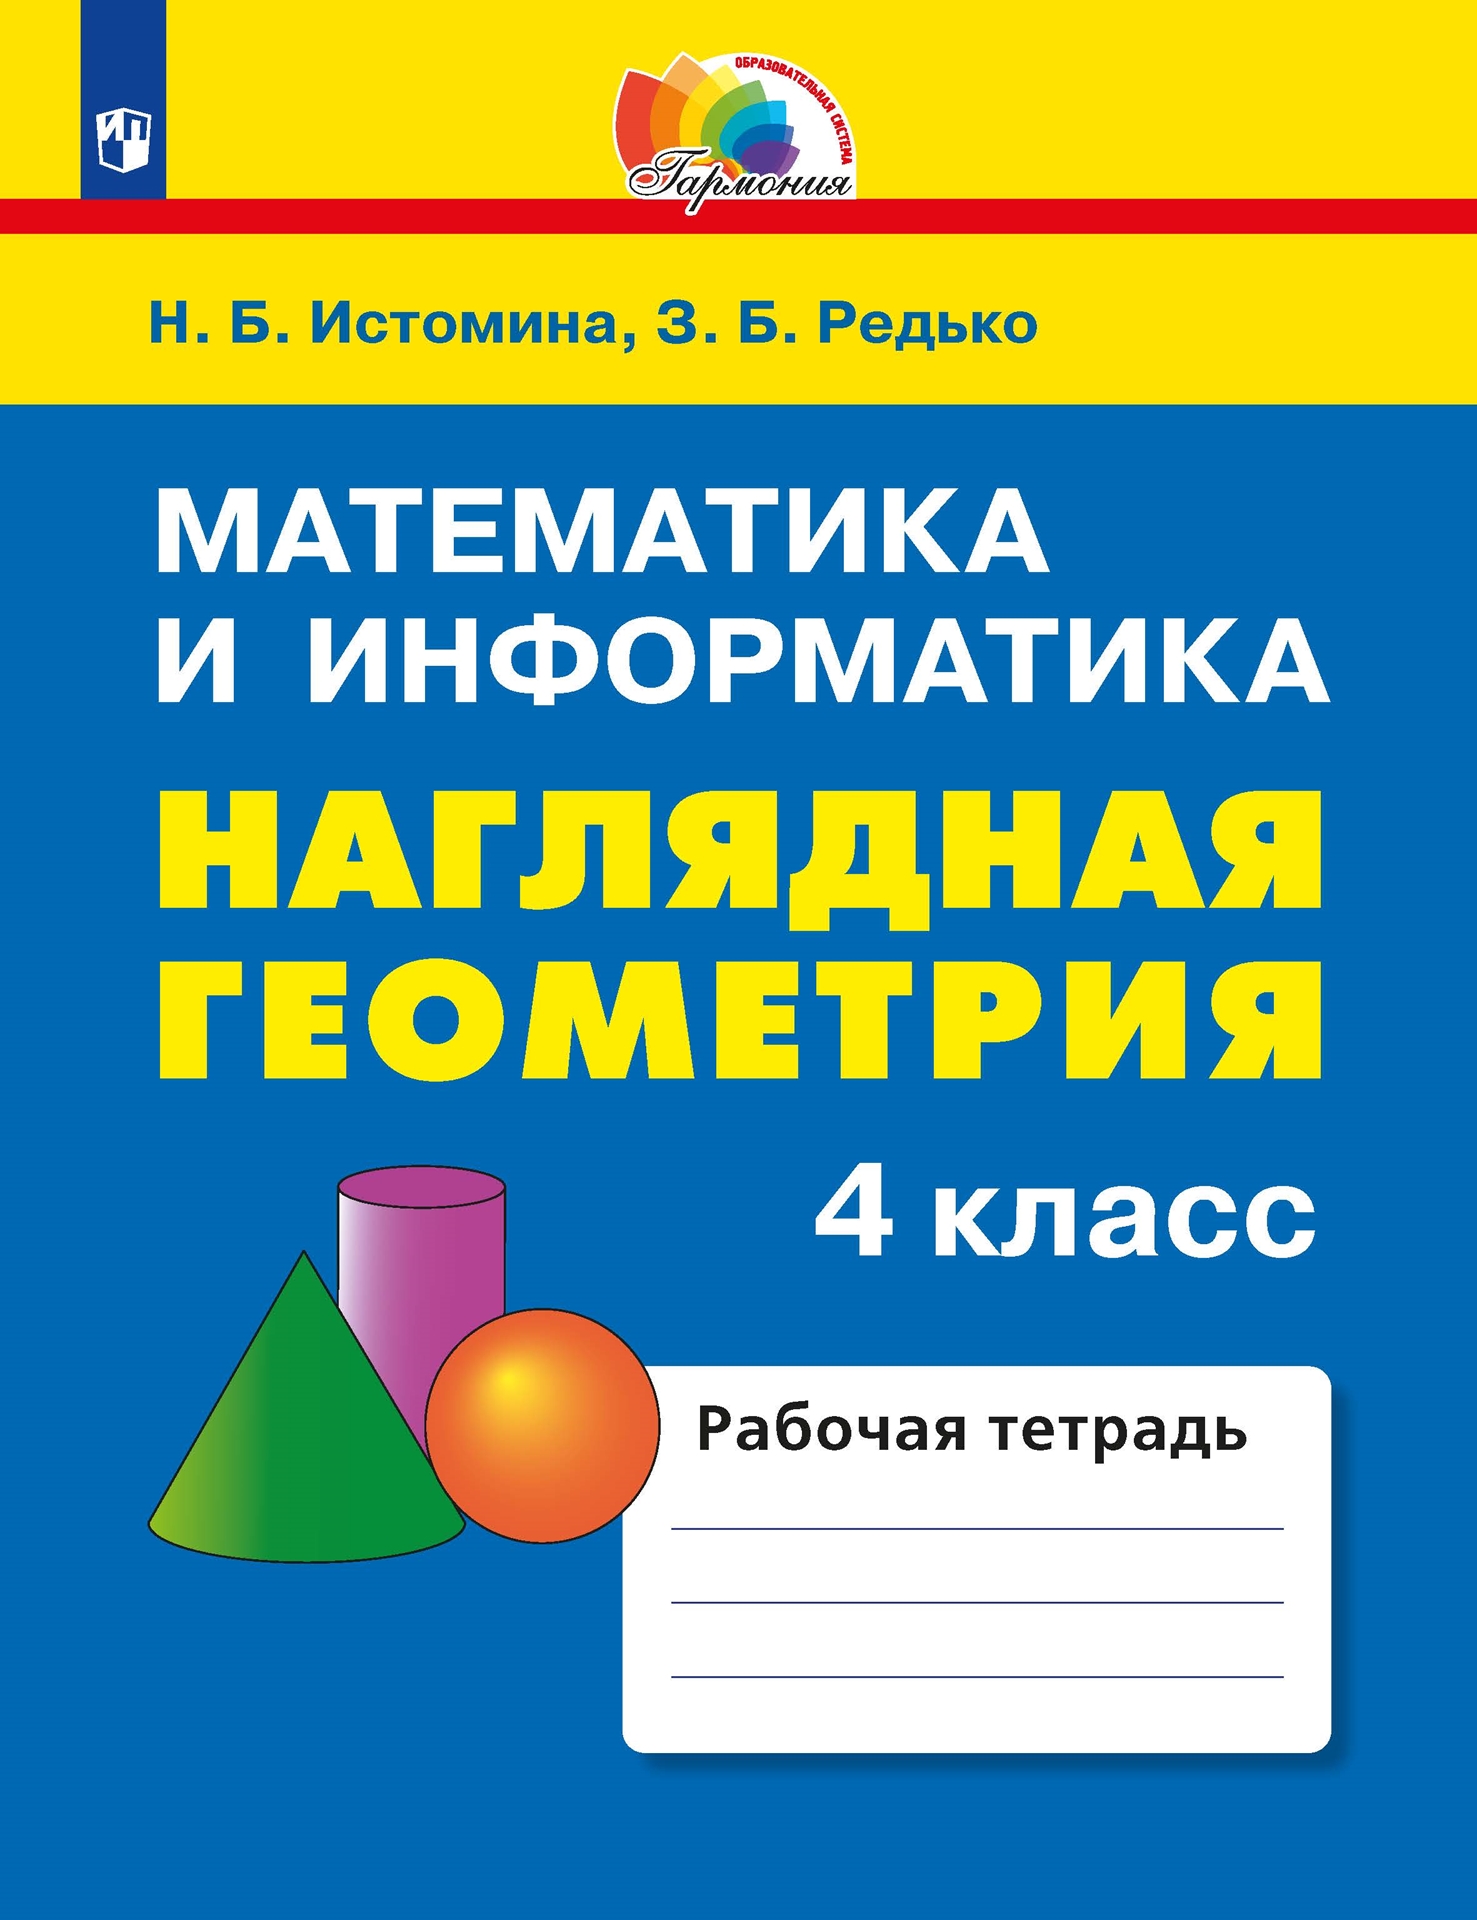 Наглядная геометрия. 4 класс: Математика и информатика: Тетрадь ФГОС